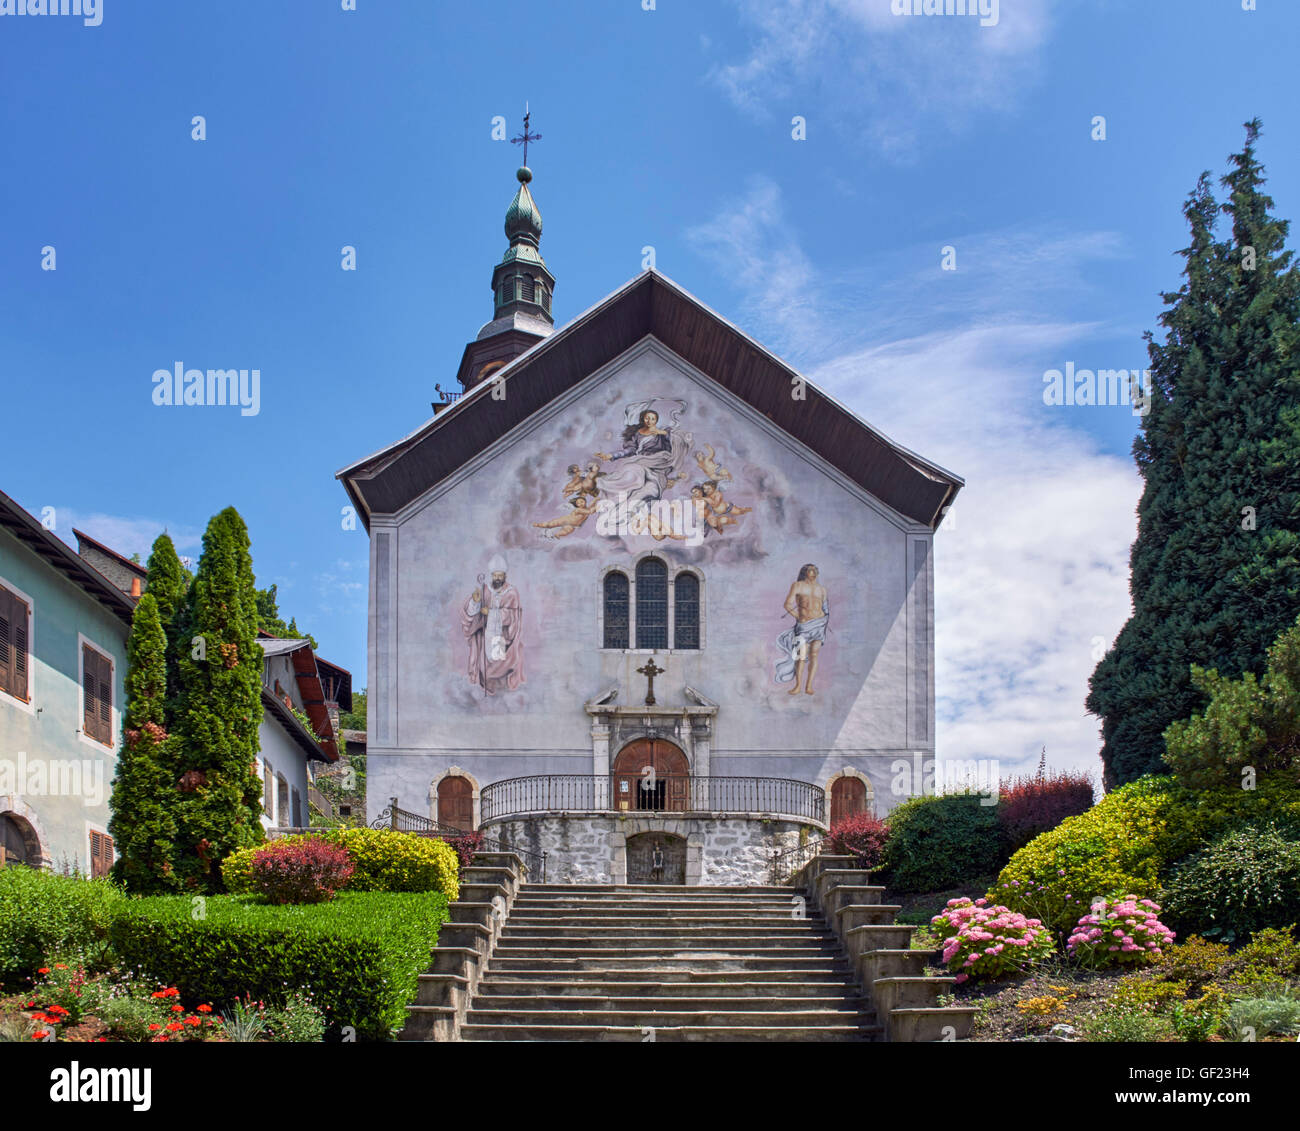 Église Notre-Dame-de-l'Assomption dans le village médiéval de Conflans. Albertville, Savoie, France. Banque D'Images